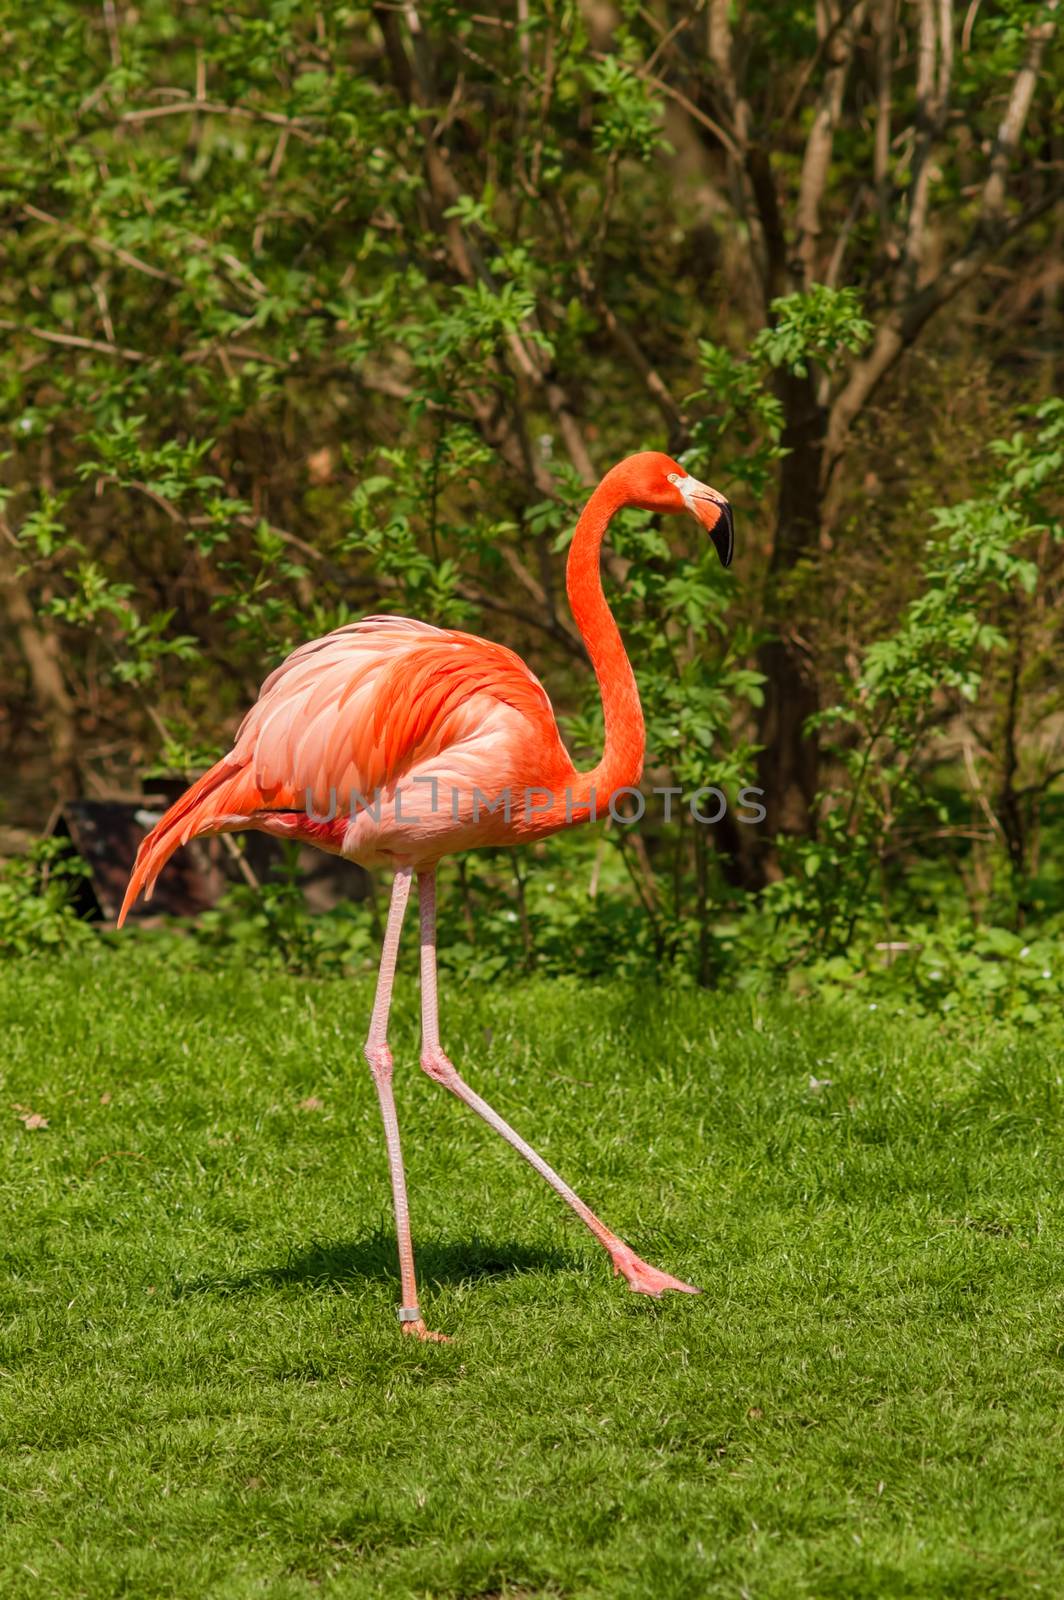 Red caribbean flamingo dancing pose